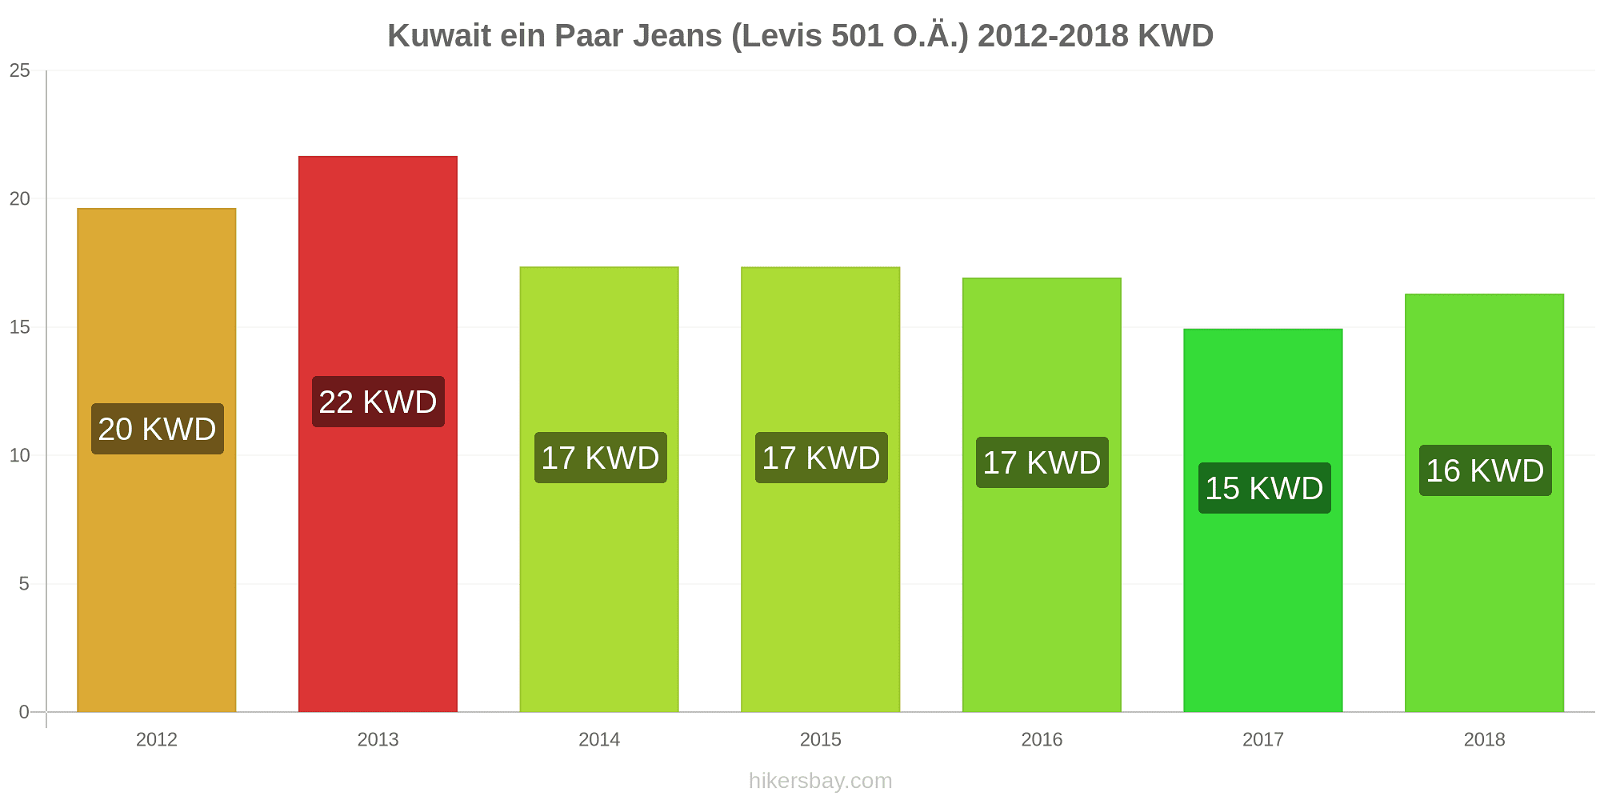 Kuwait Preisänderungen 1 Paar Jeans (Levis 501 oder ähnlich) hikersbay.com